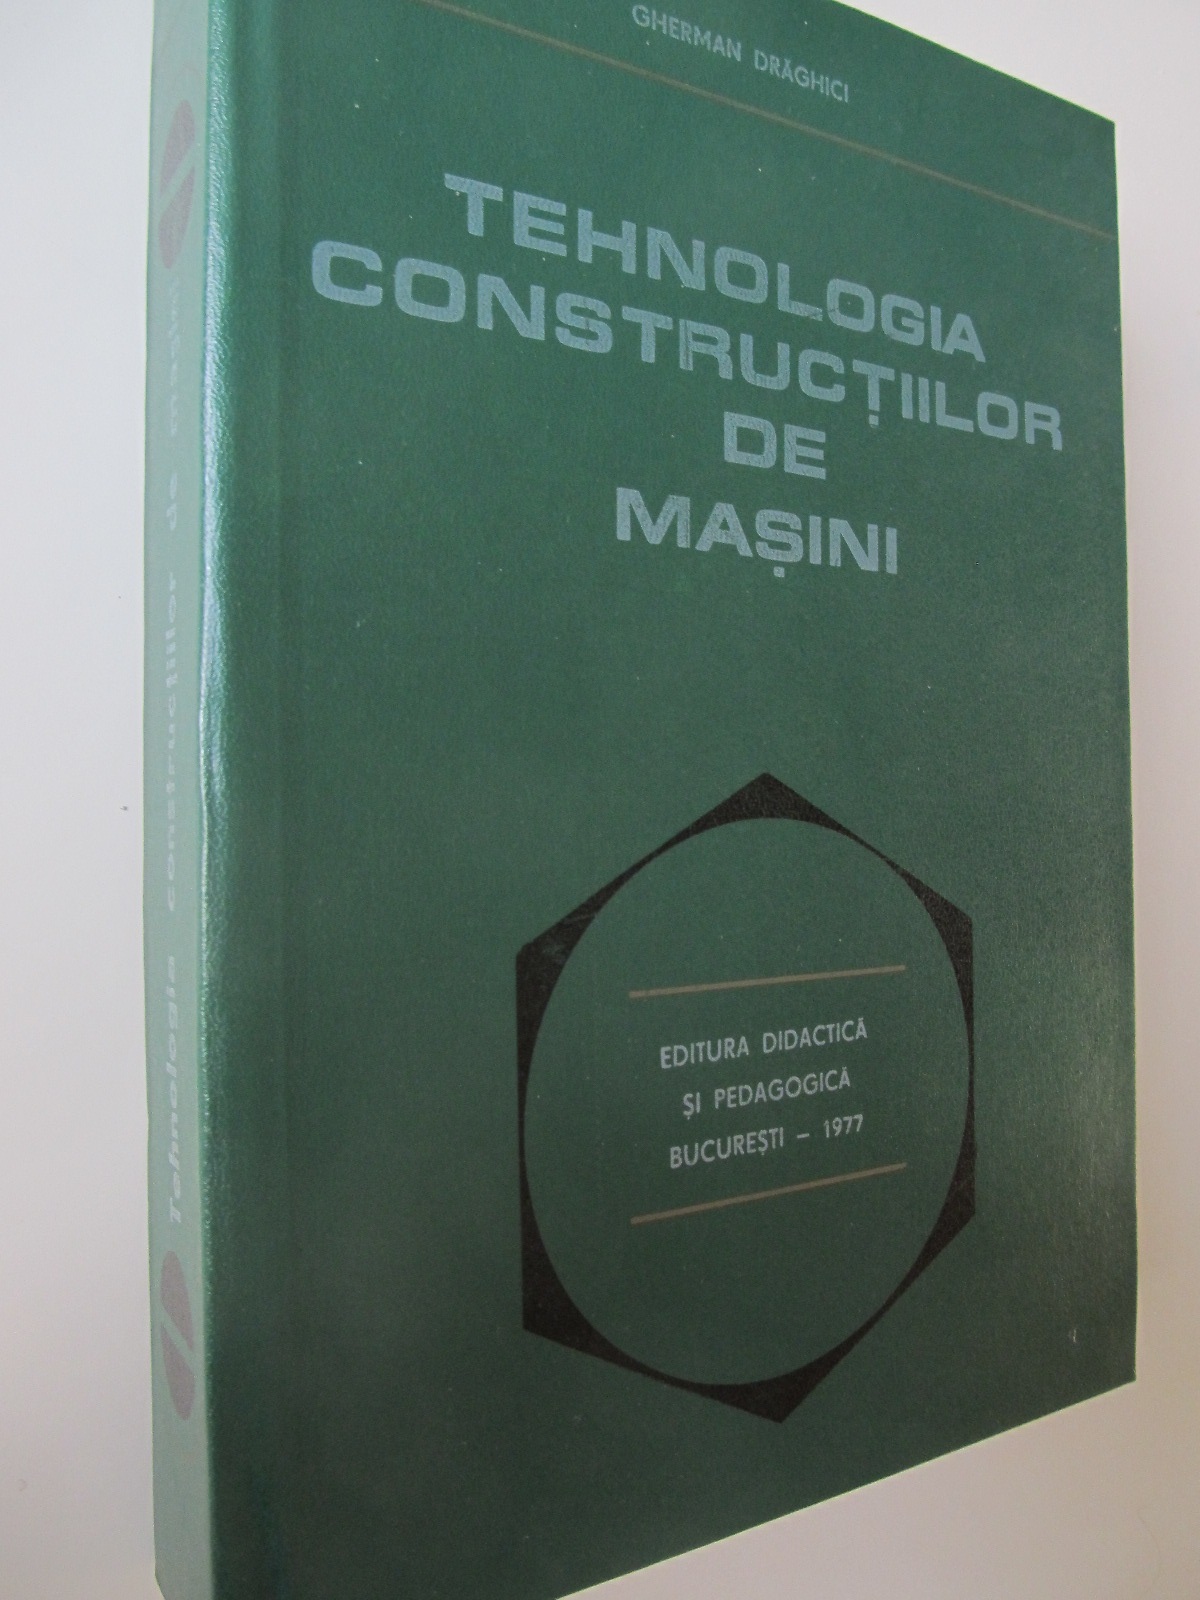 Tehnologia constructiilor de masini - Gherman Draghici | Detalii carte